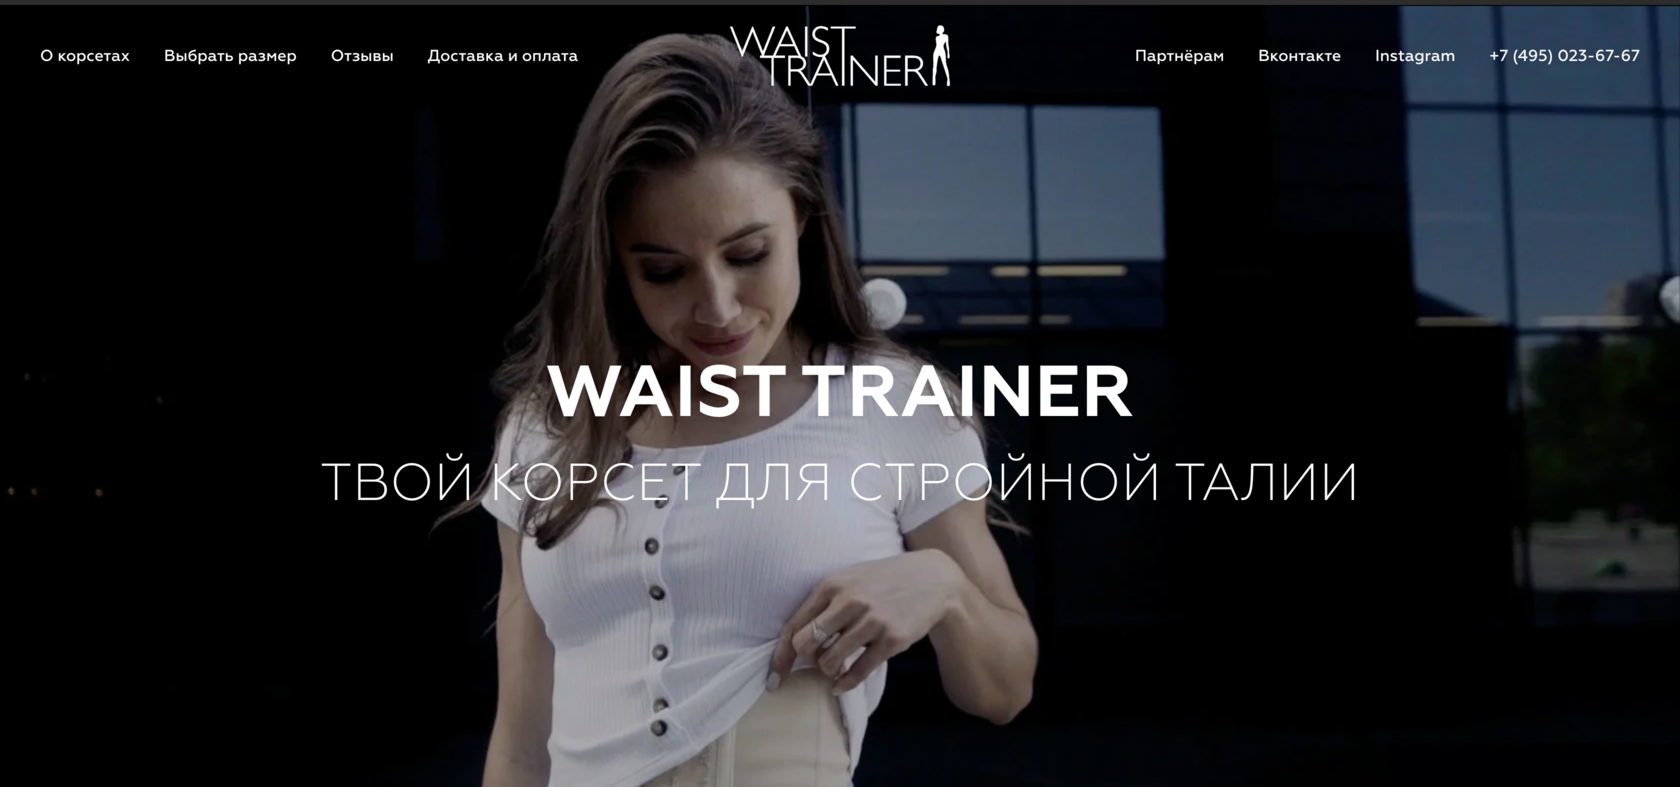 Корсет WAIST TRAINER купить на официальном сайте, цена, отзывы о корсете